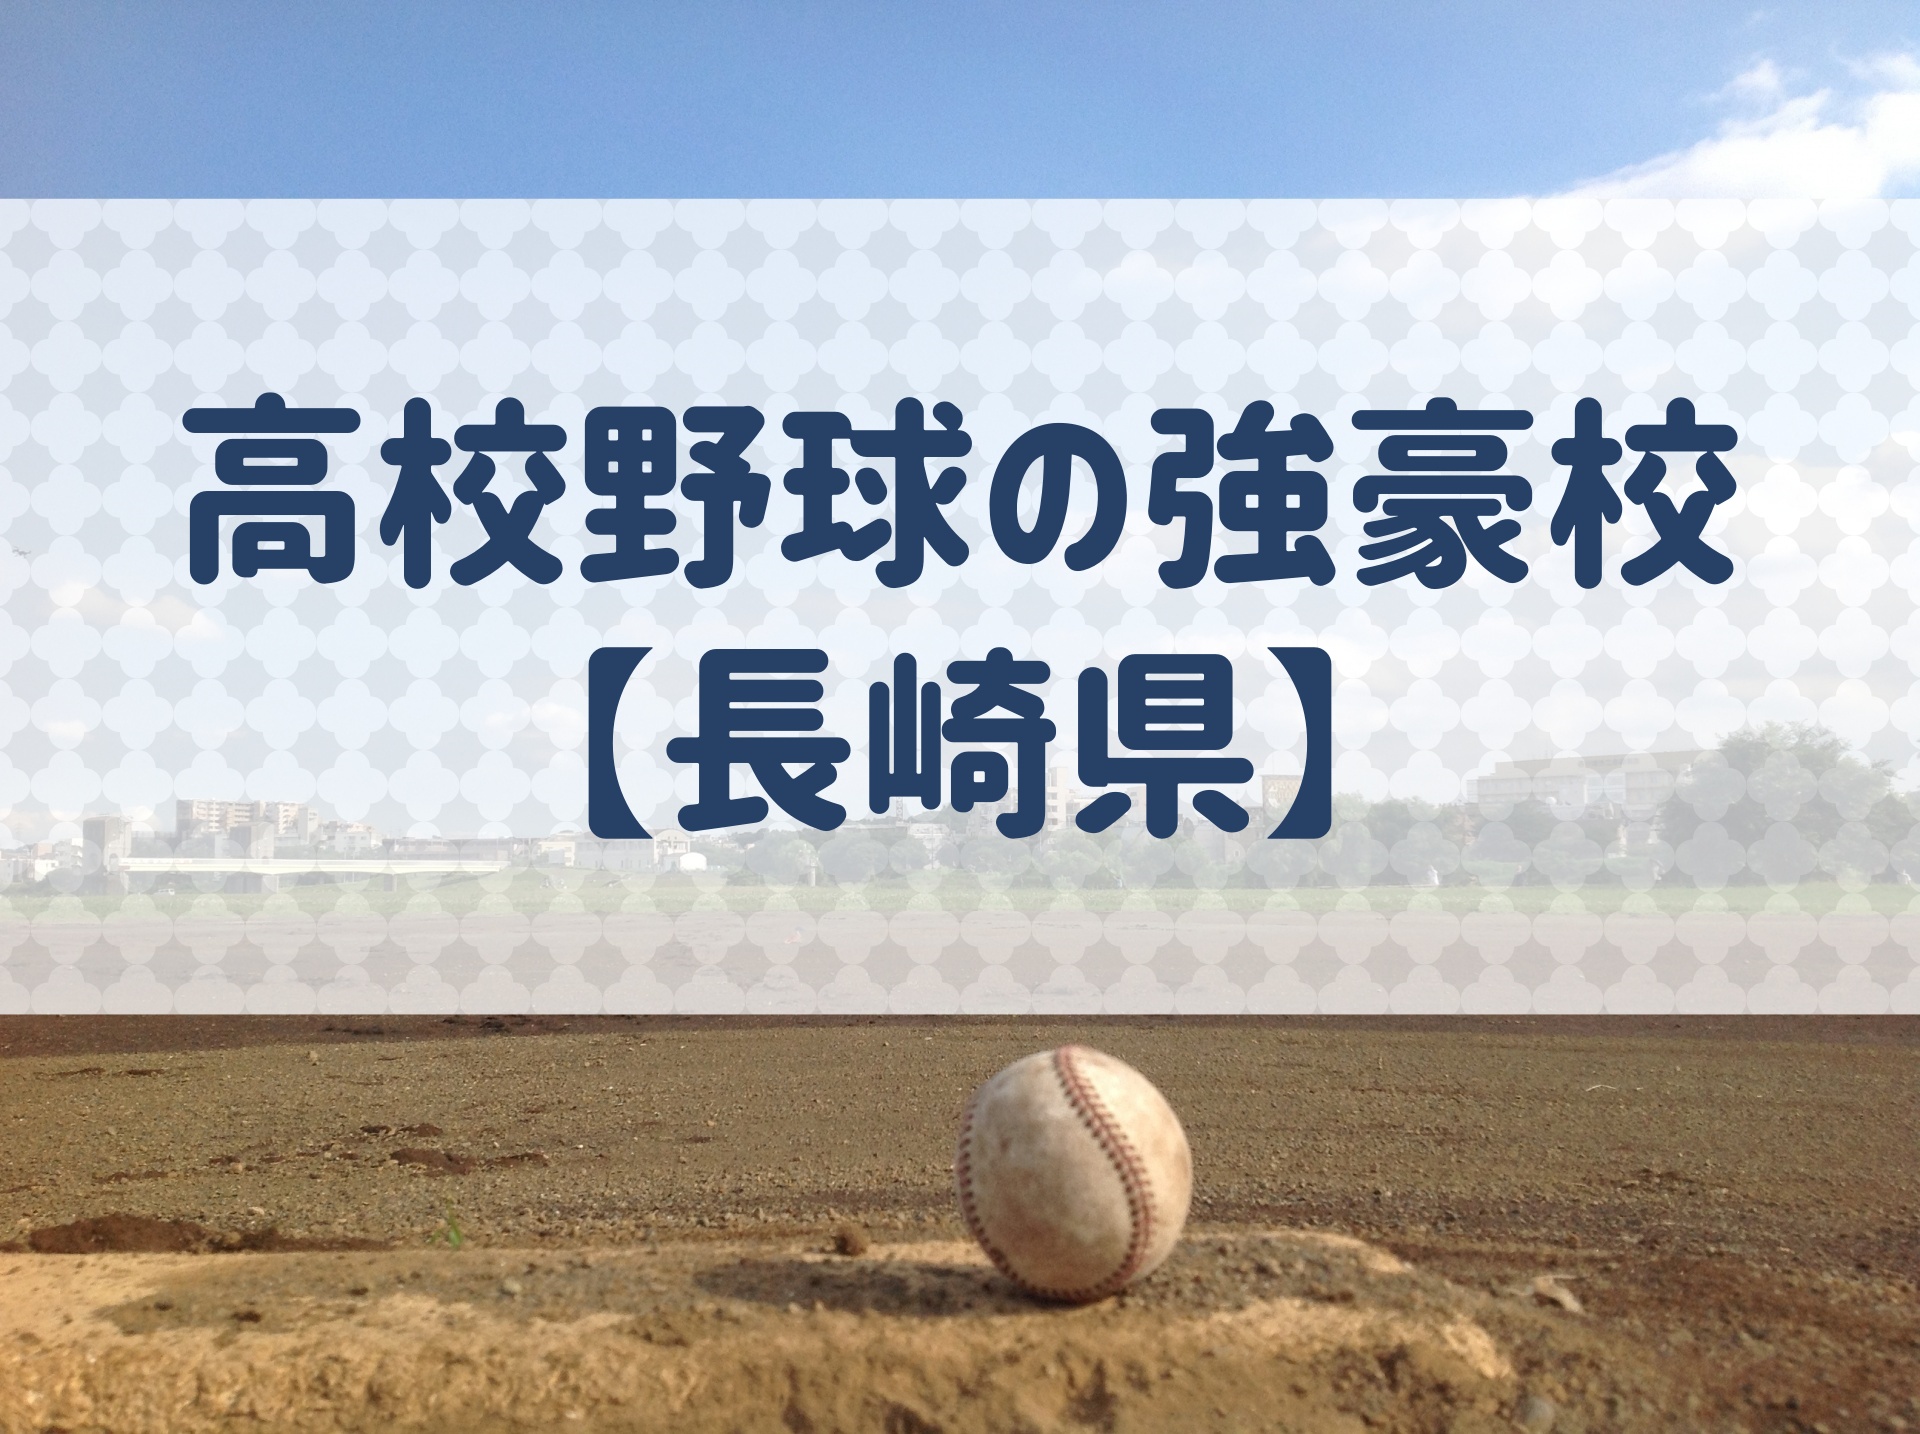 長崎県 高校野球の強豪校 特徴と実績などを紹介 野球用語 Net